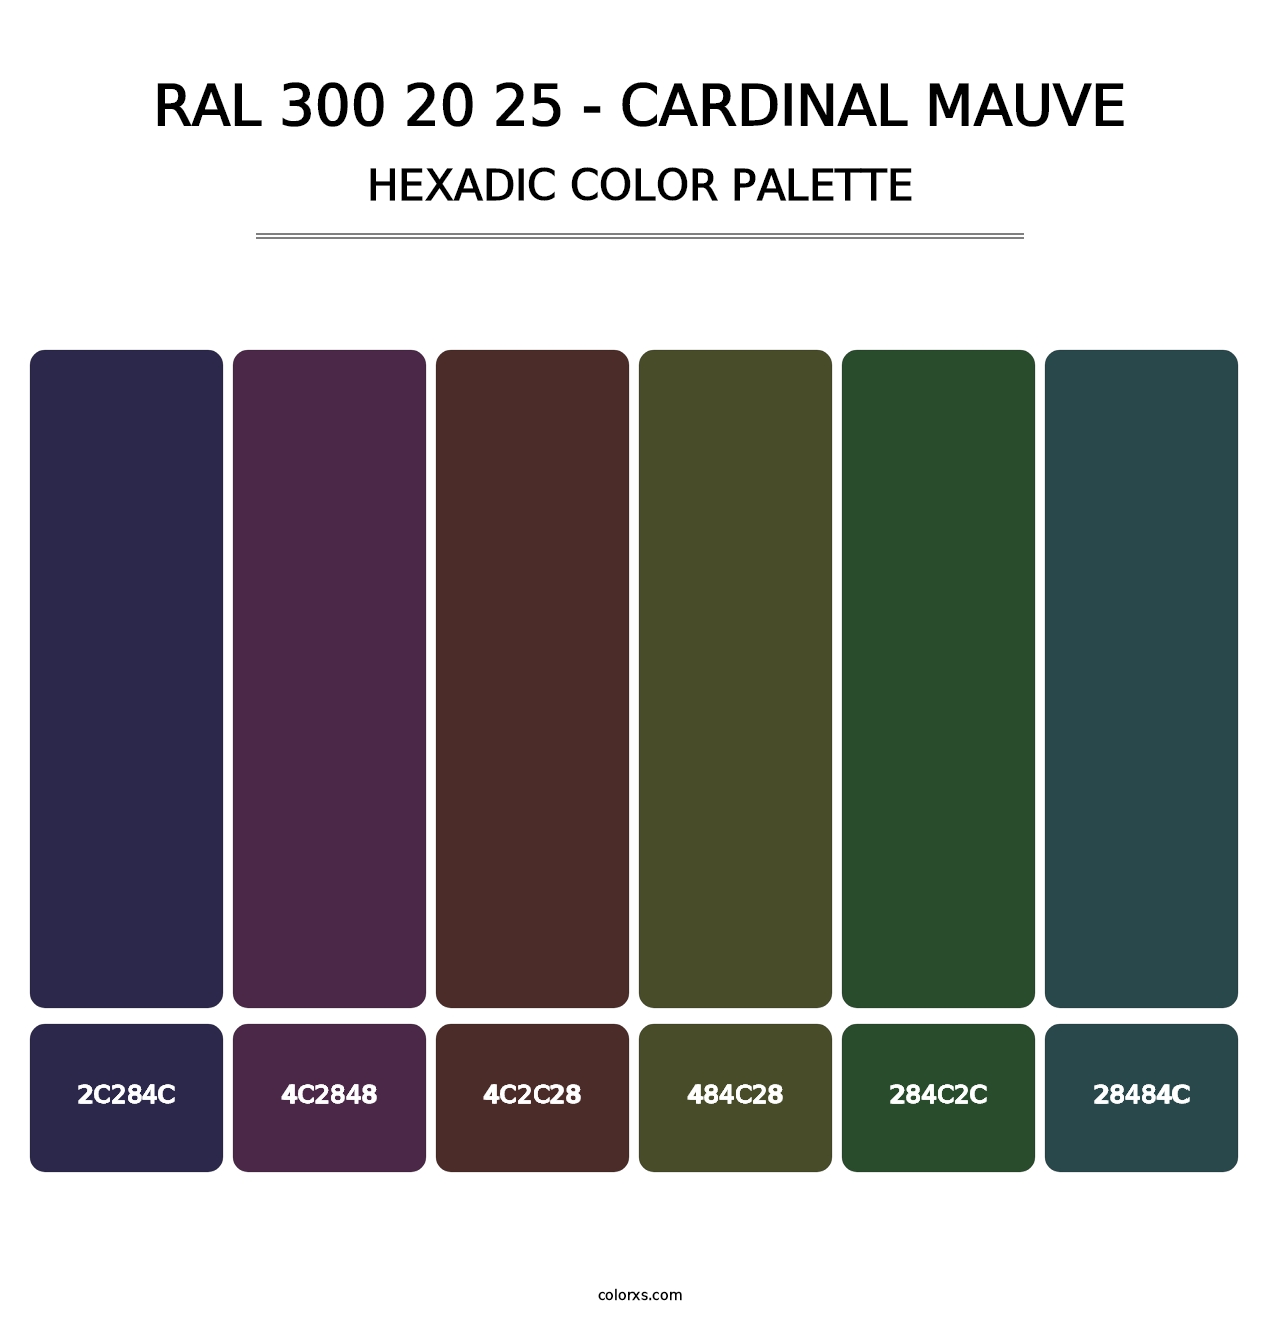 RAL 300 20 25 - Cardinal Mauve - Hexadic Color Palette